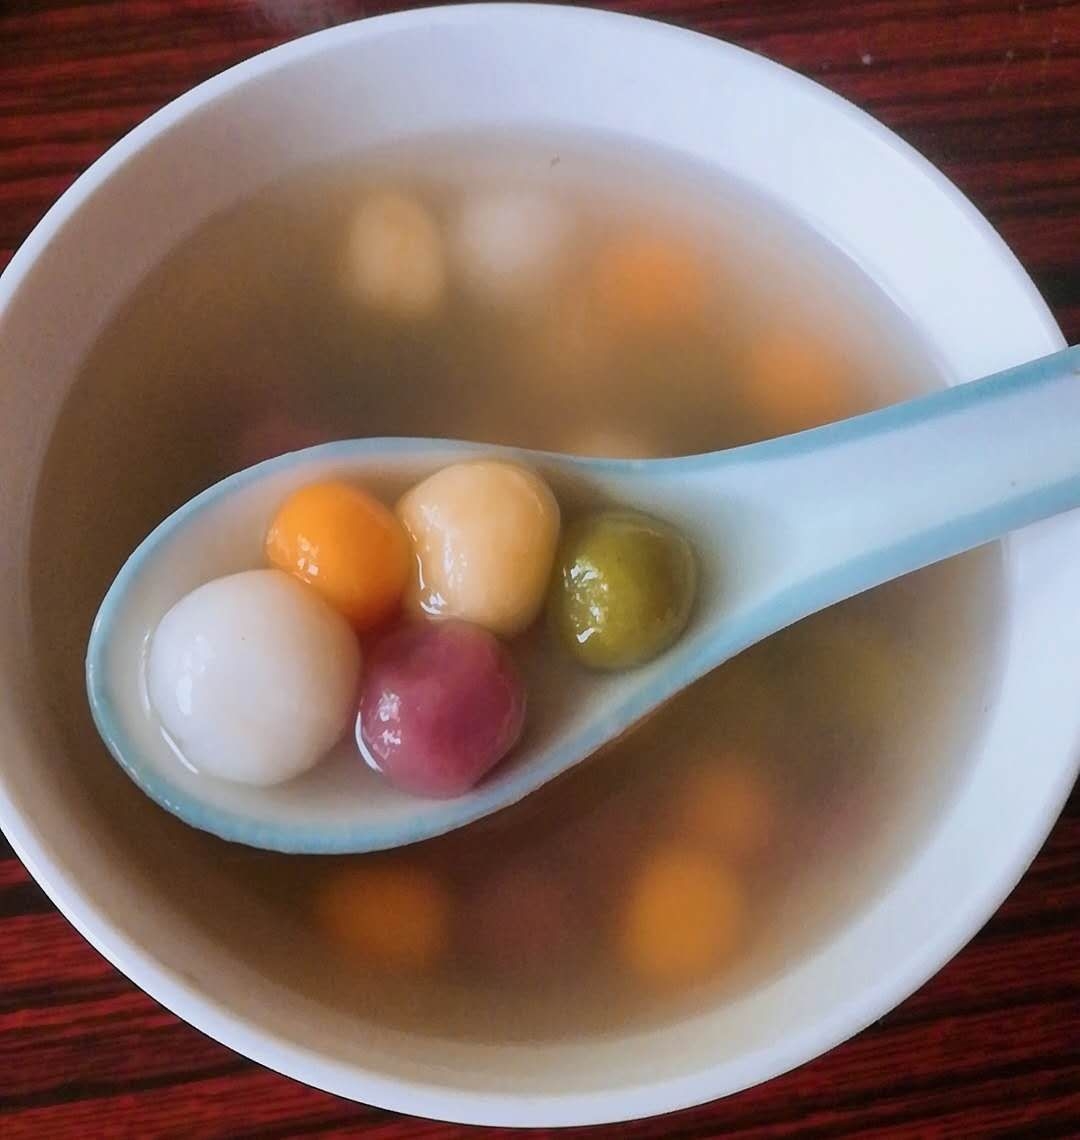 彩色汤圆纯天然食材